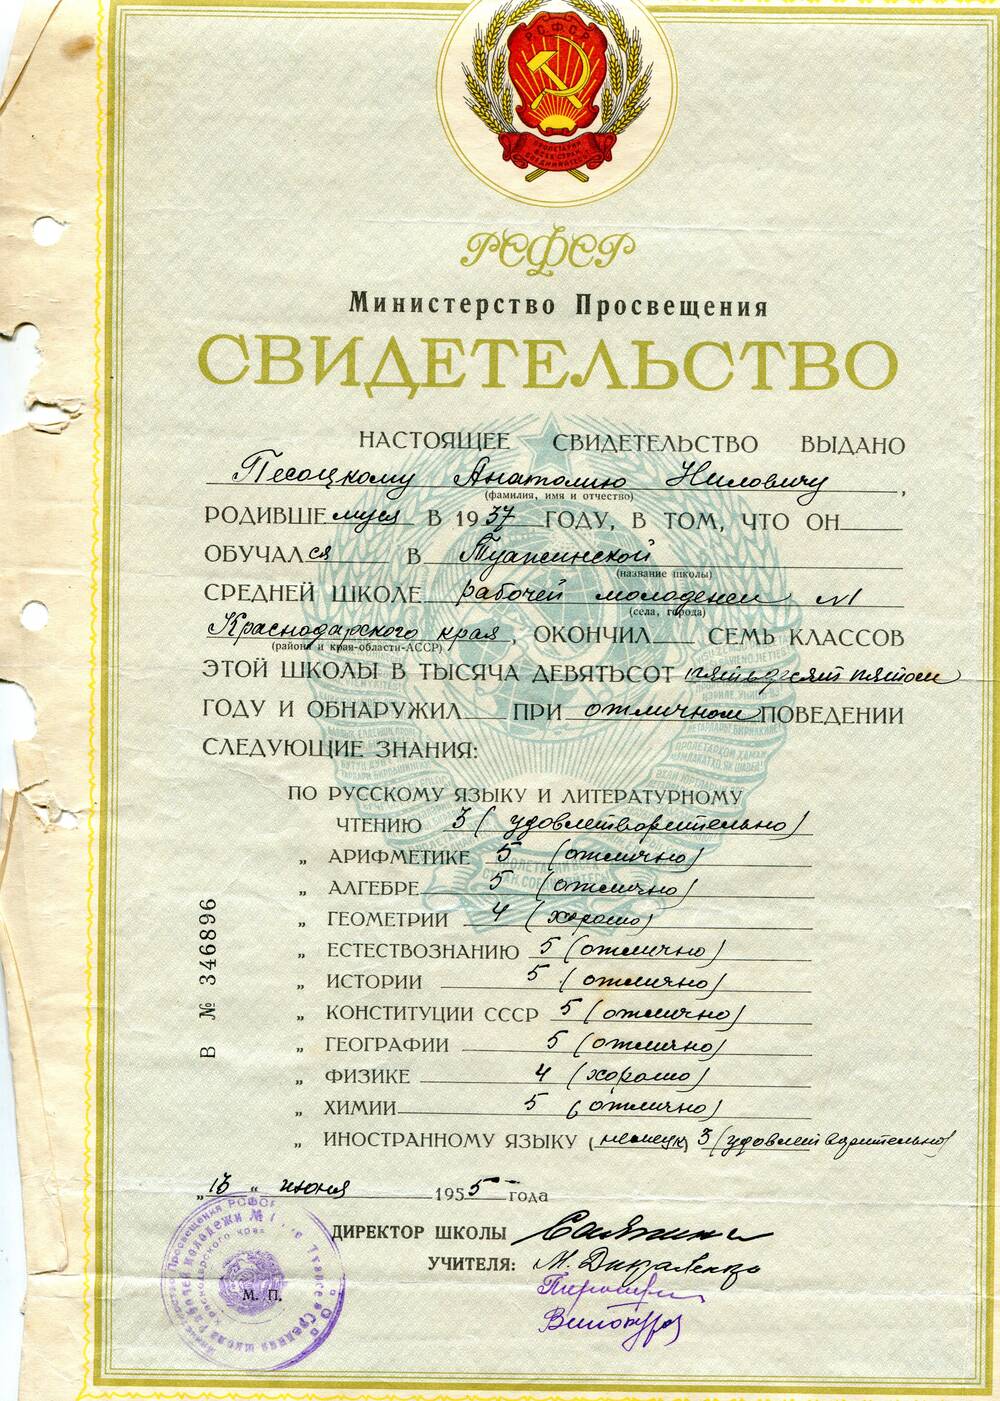 Свидетельство В № 346896 выдано Песоцкому Анатолию Ниловичу, родившемуся в 1937 году, об окончании семи классов Туапсинской средней школы рабочей молодежи № 1 Краснодарского края.